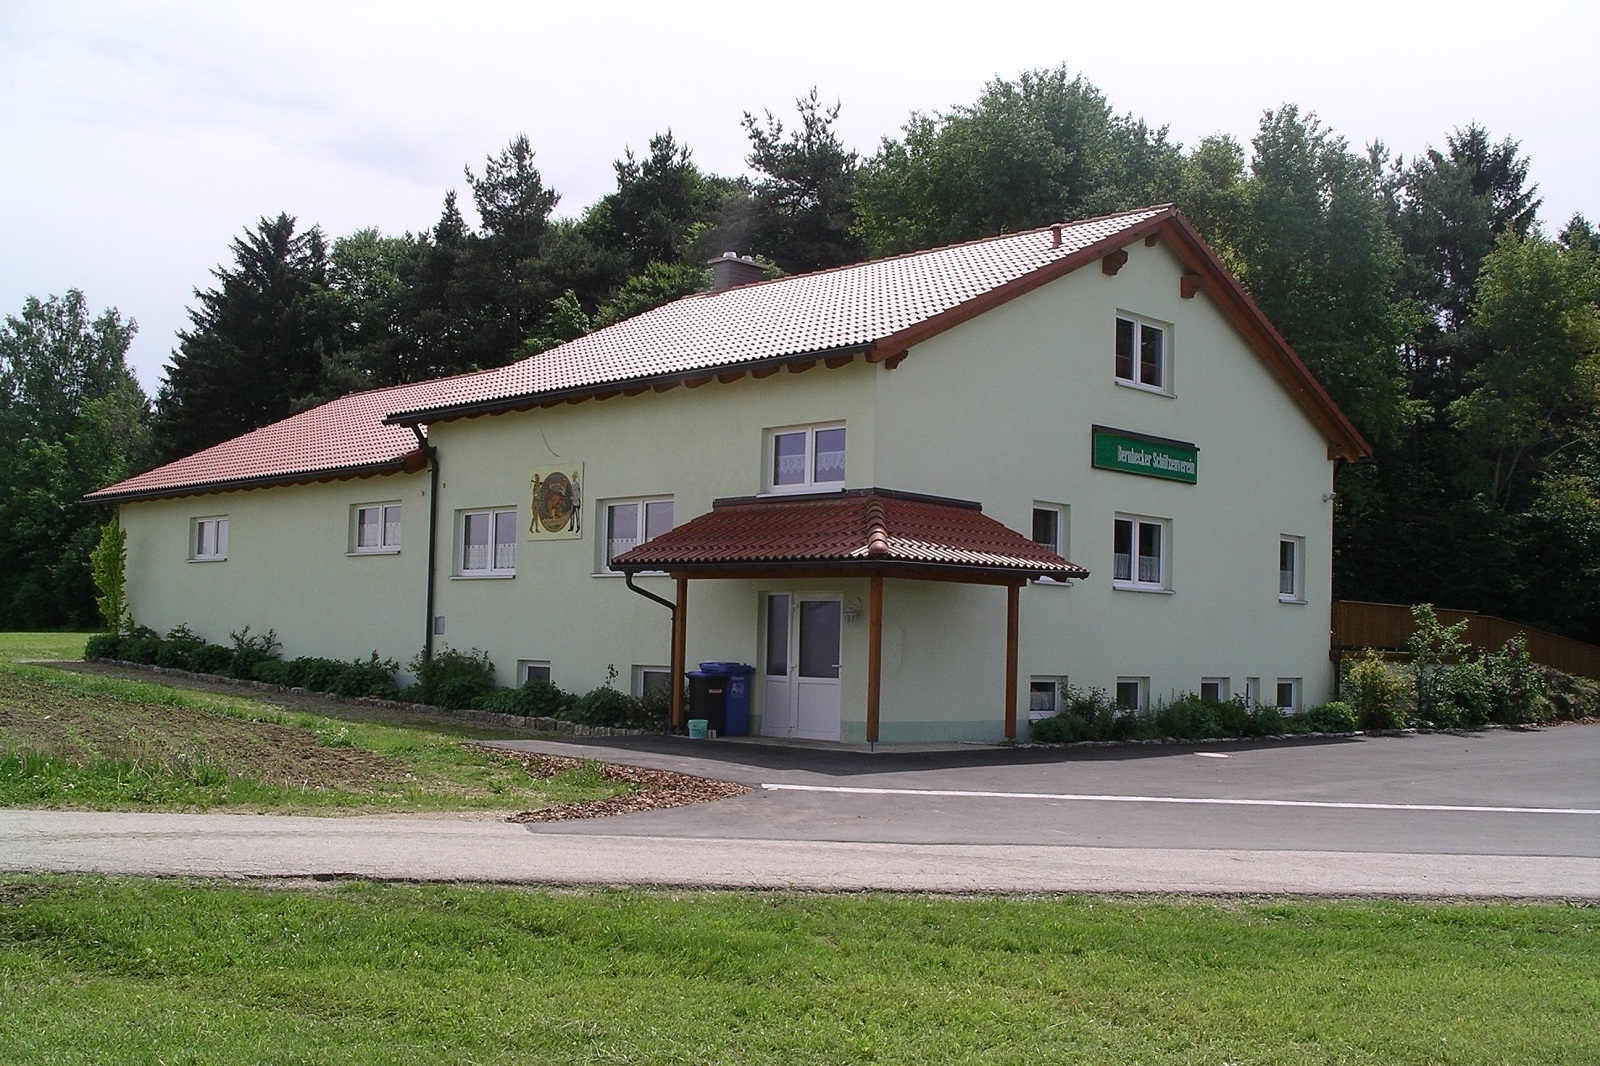 Bernhecker Schützenhaus